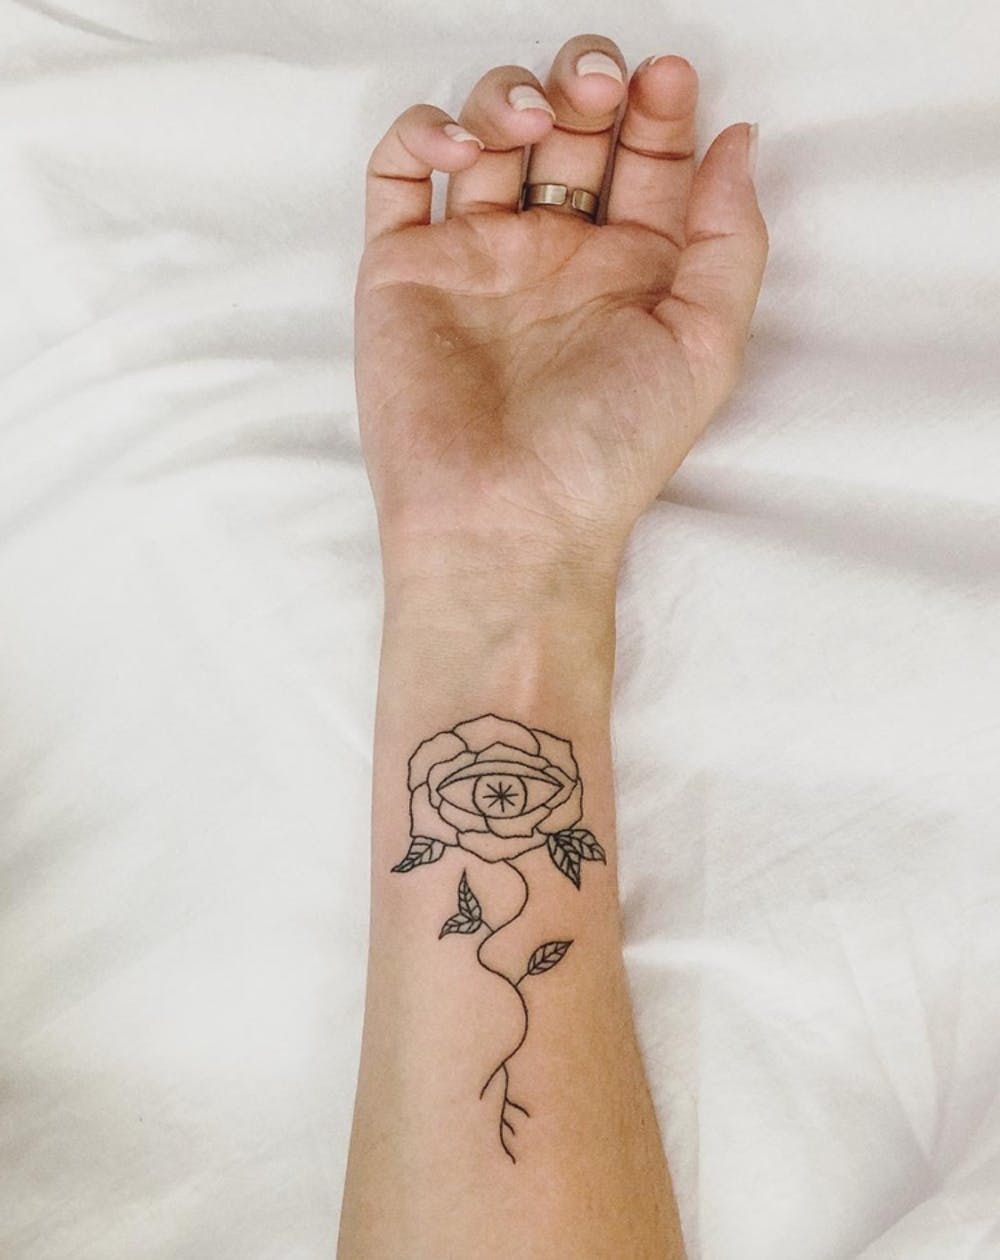 Soul Tattoo on Arm - Best Tattoo Ideas Gallery